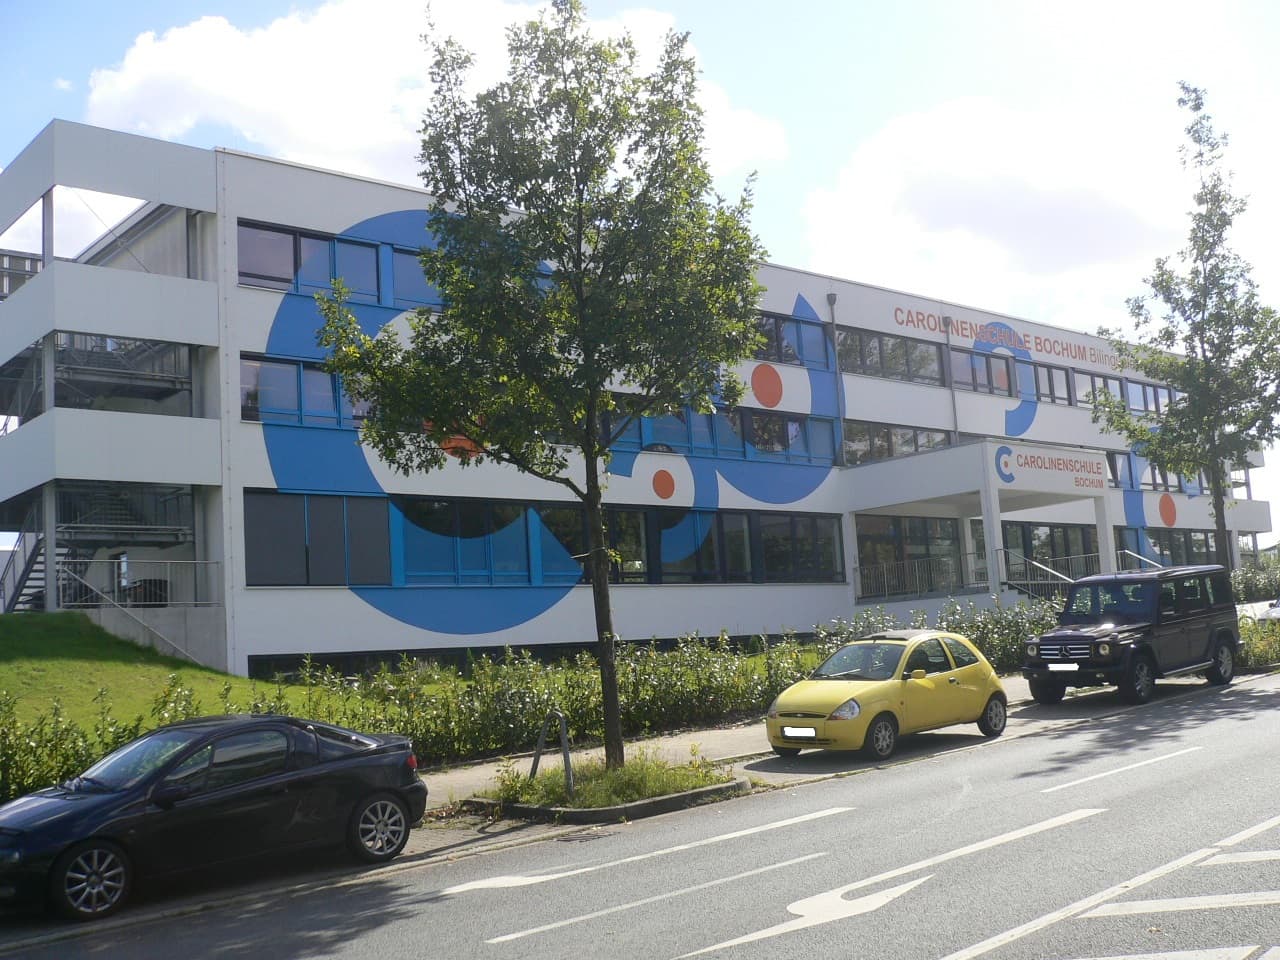 März 2023 - Erweiterung des Anbaus an der Sporthalle der Carolinenschule in Bochum